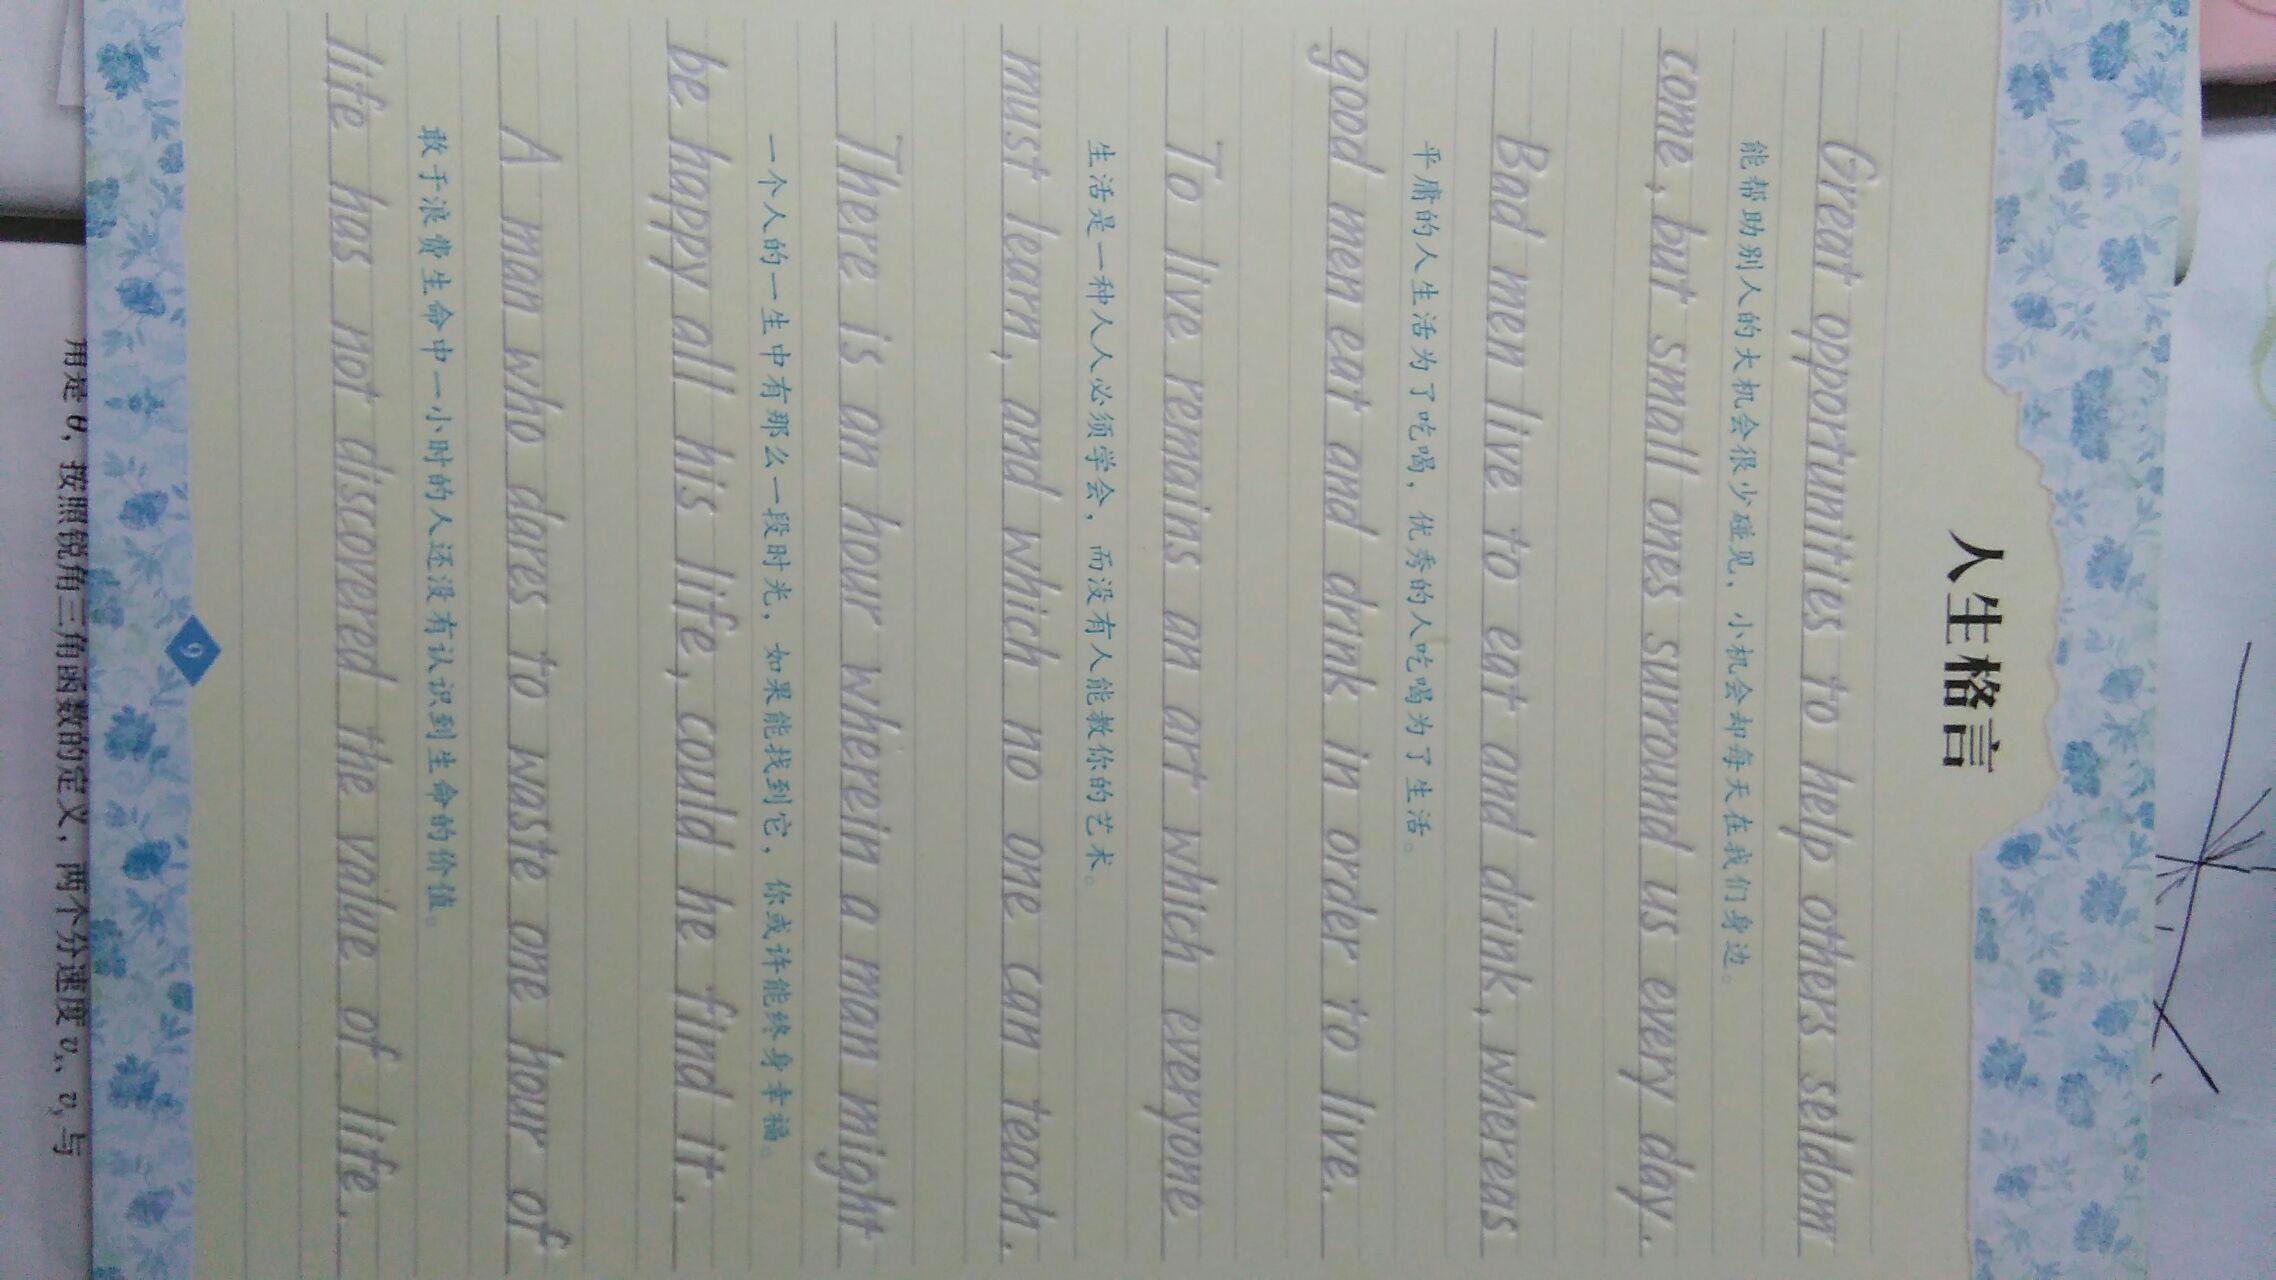 求问黄冈中学英文的手写体是怎么练的?如图?